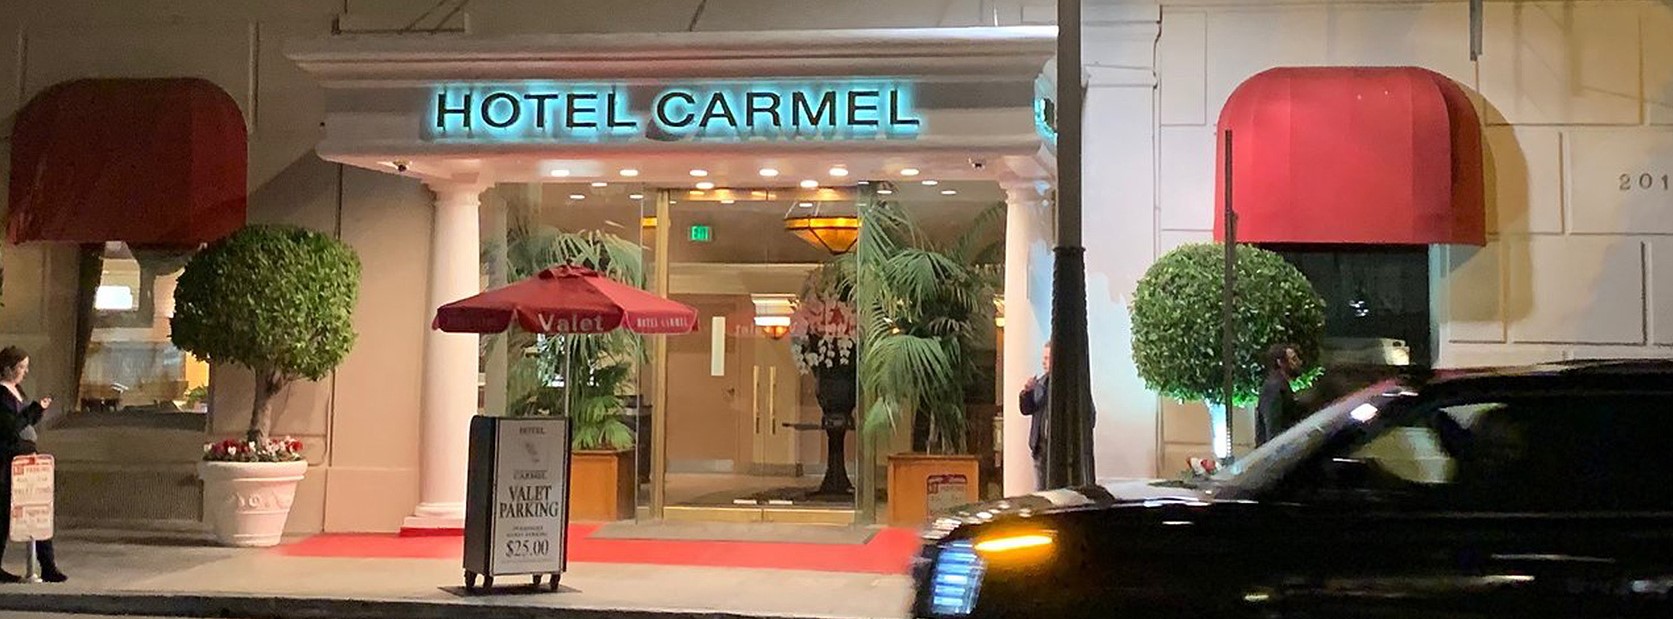 Hotel Carmel Santa Monica